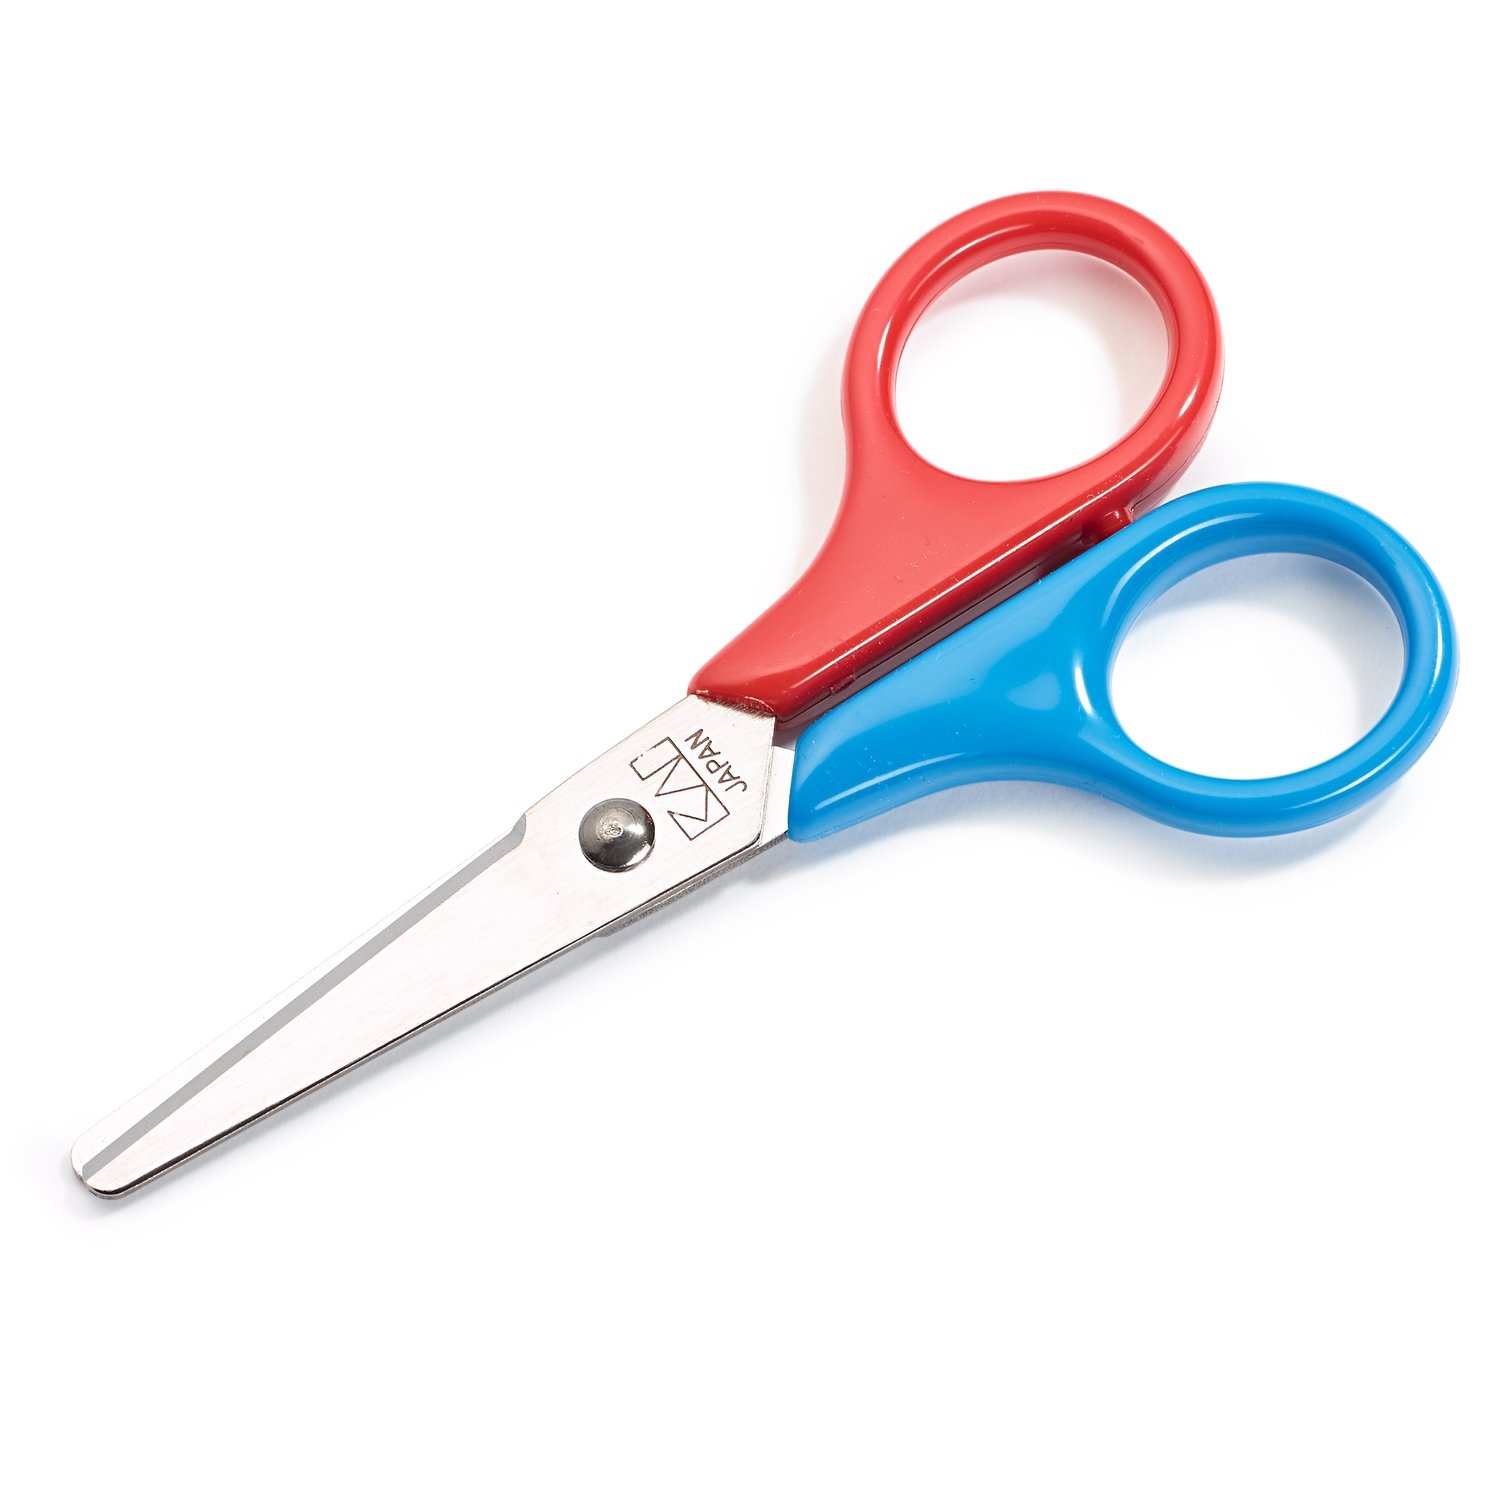 Children's scissors 10cm